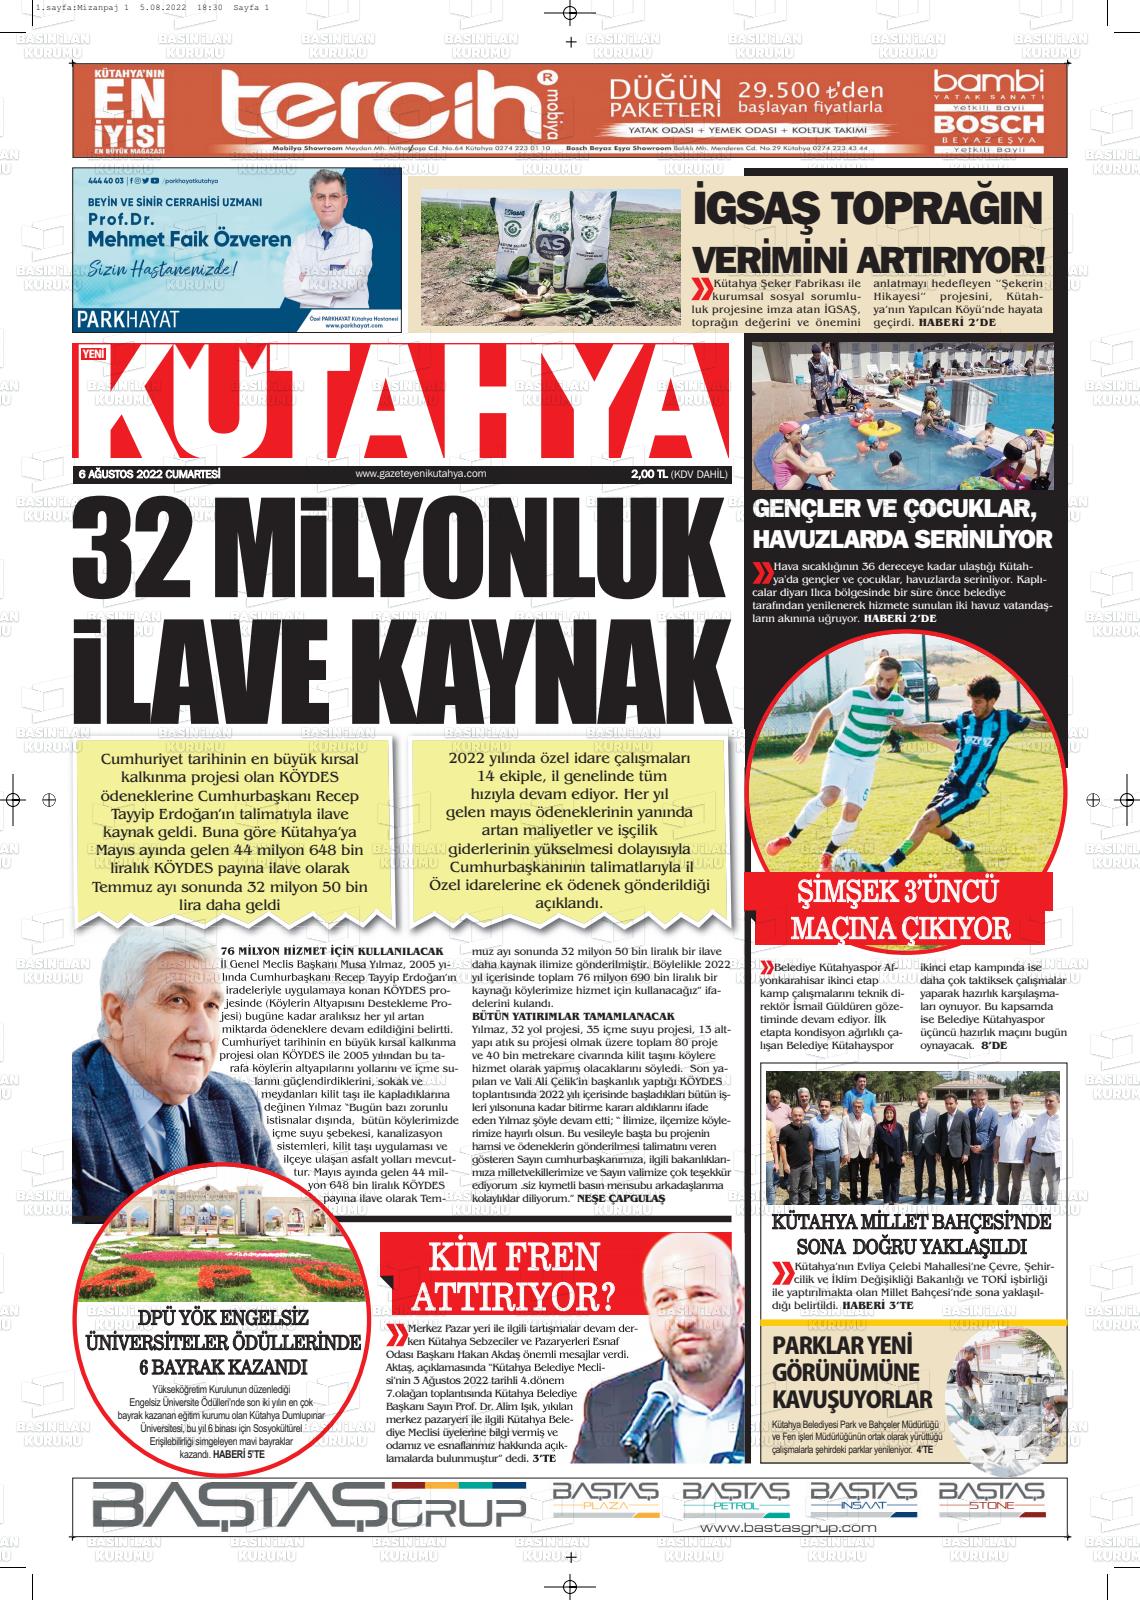 06 Ağustos 2022 Yeni Kütahya Gazete Manşeti